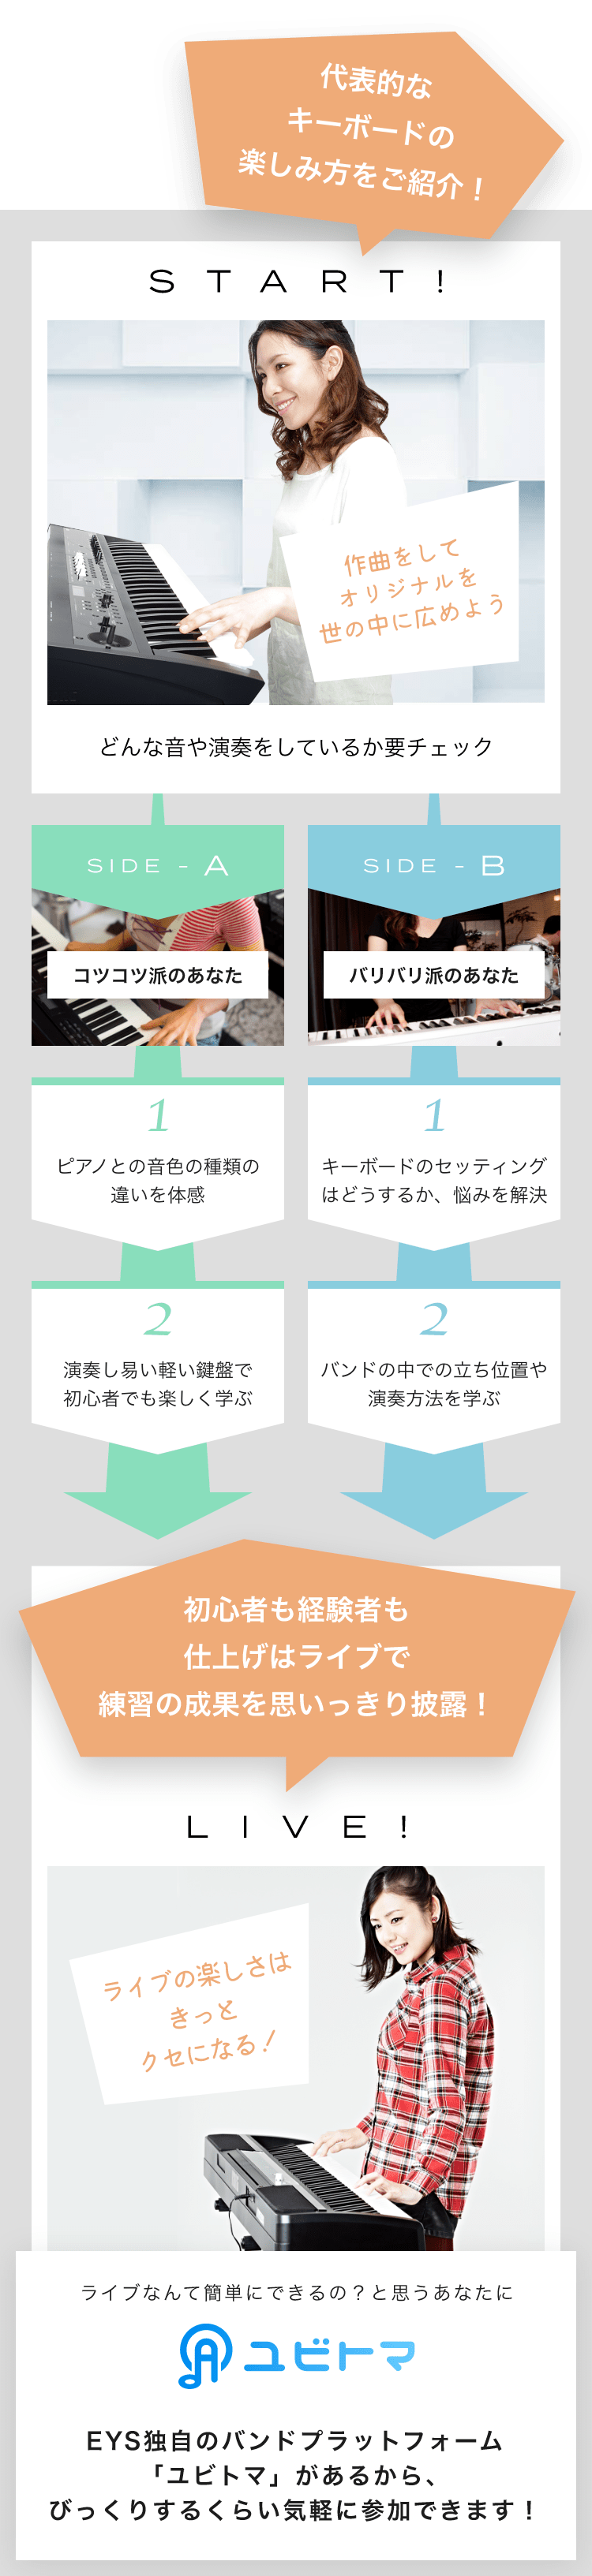 START! 作曲をしてオリジナルを世の中に広めようどんな音や演奏をしているか要チェック SIDE-A 1. ピアノとの音色の種類の違いを体感 2. 演奏し易い軽い鍵盤で初心者でも楽しく学ぶ SIDE-B 1. キーボードのセッティングはどうするか、悩みを解決 2. バンドの中での立ち位置や演奏方法を学ぶ 初心者も経験者も仕上げはライブで練習の成果を思いっきり披露！LIVE!ライブの楽しさはきっとクセになる！ライブなんて簡単にできるの？と思うあなたにユビトマEYS独自のバンドプラットフォーム「ユビトマ」があるから、びっくりするくらい気軽に参加できます！